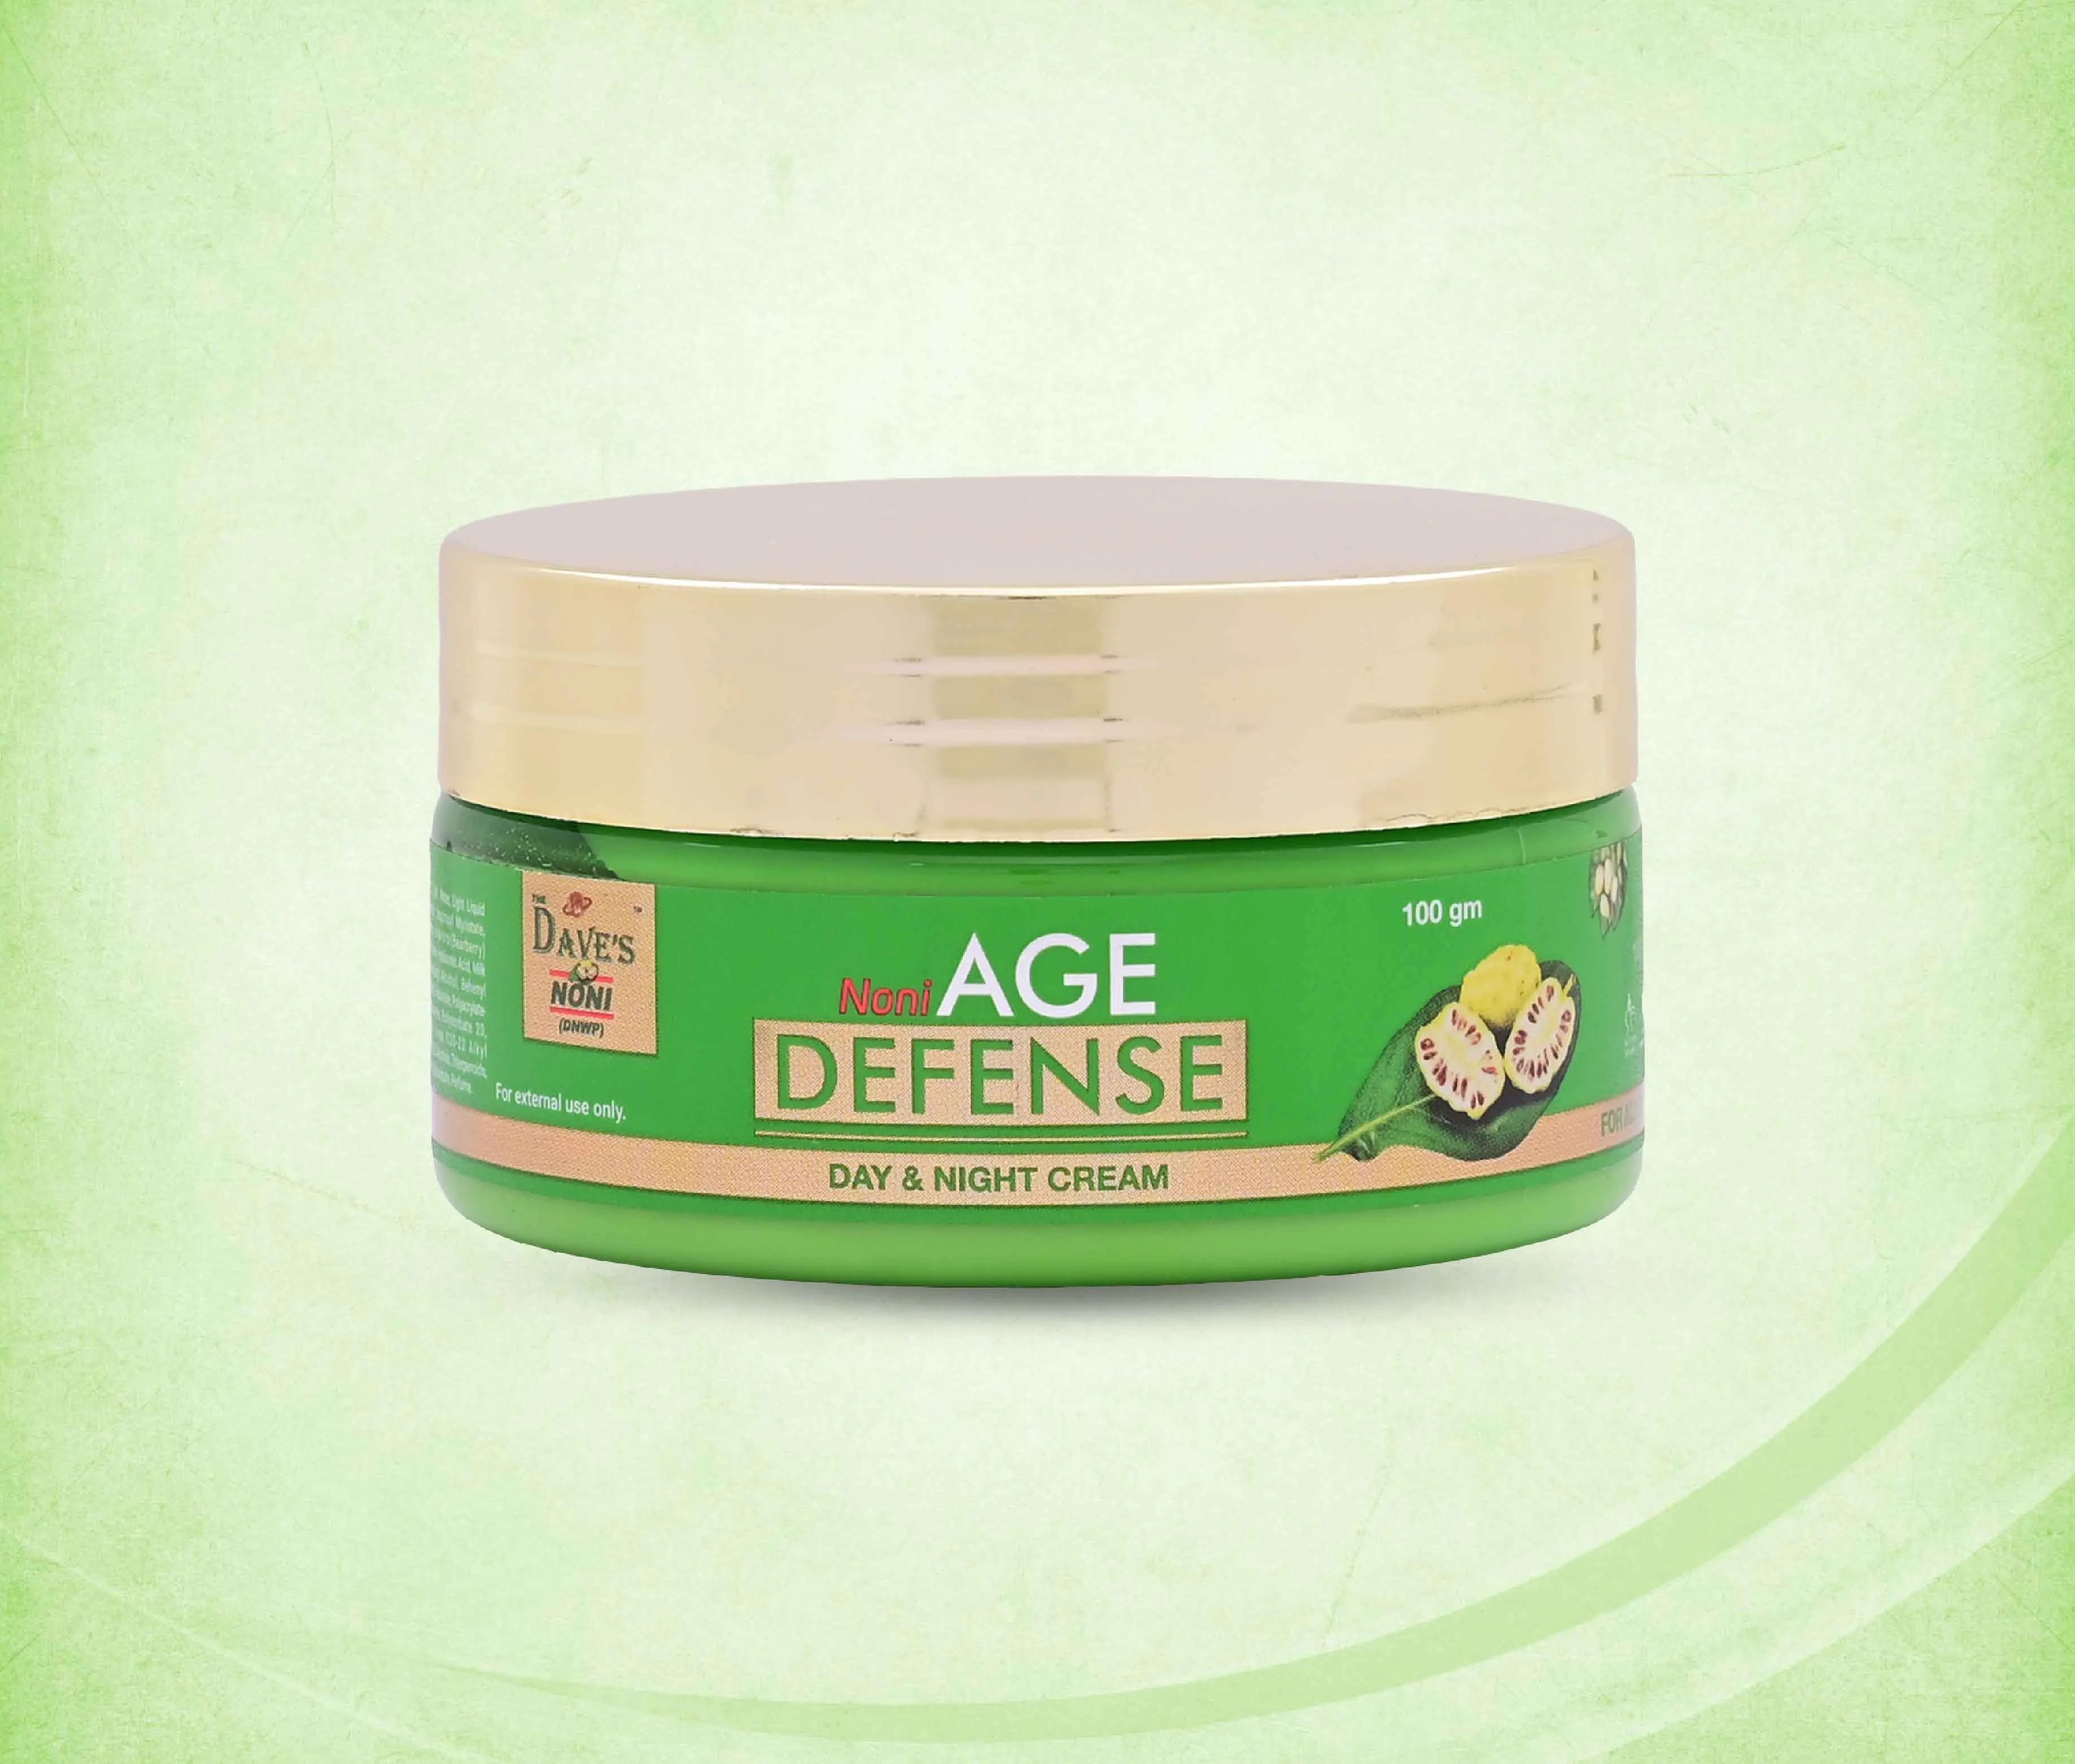 Noni Multi-Action Face Wash + Noni Age Defense Skin Cream (For All Skin Types)